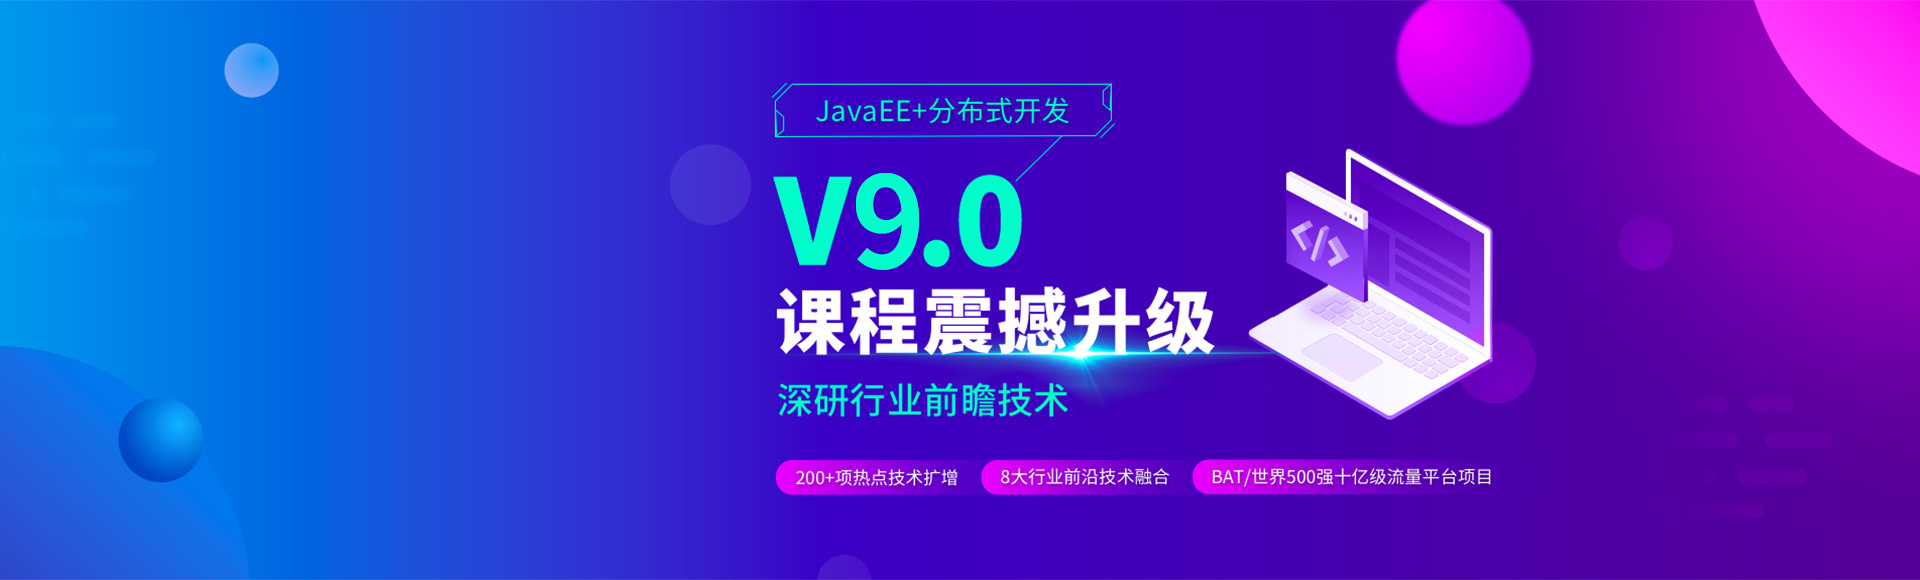 JavaEE+分布式开发课程震撼升级